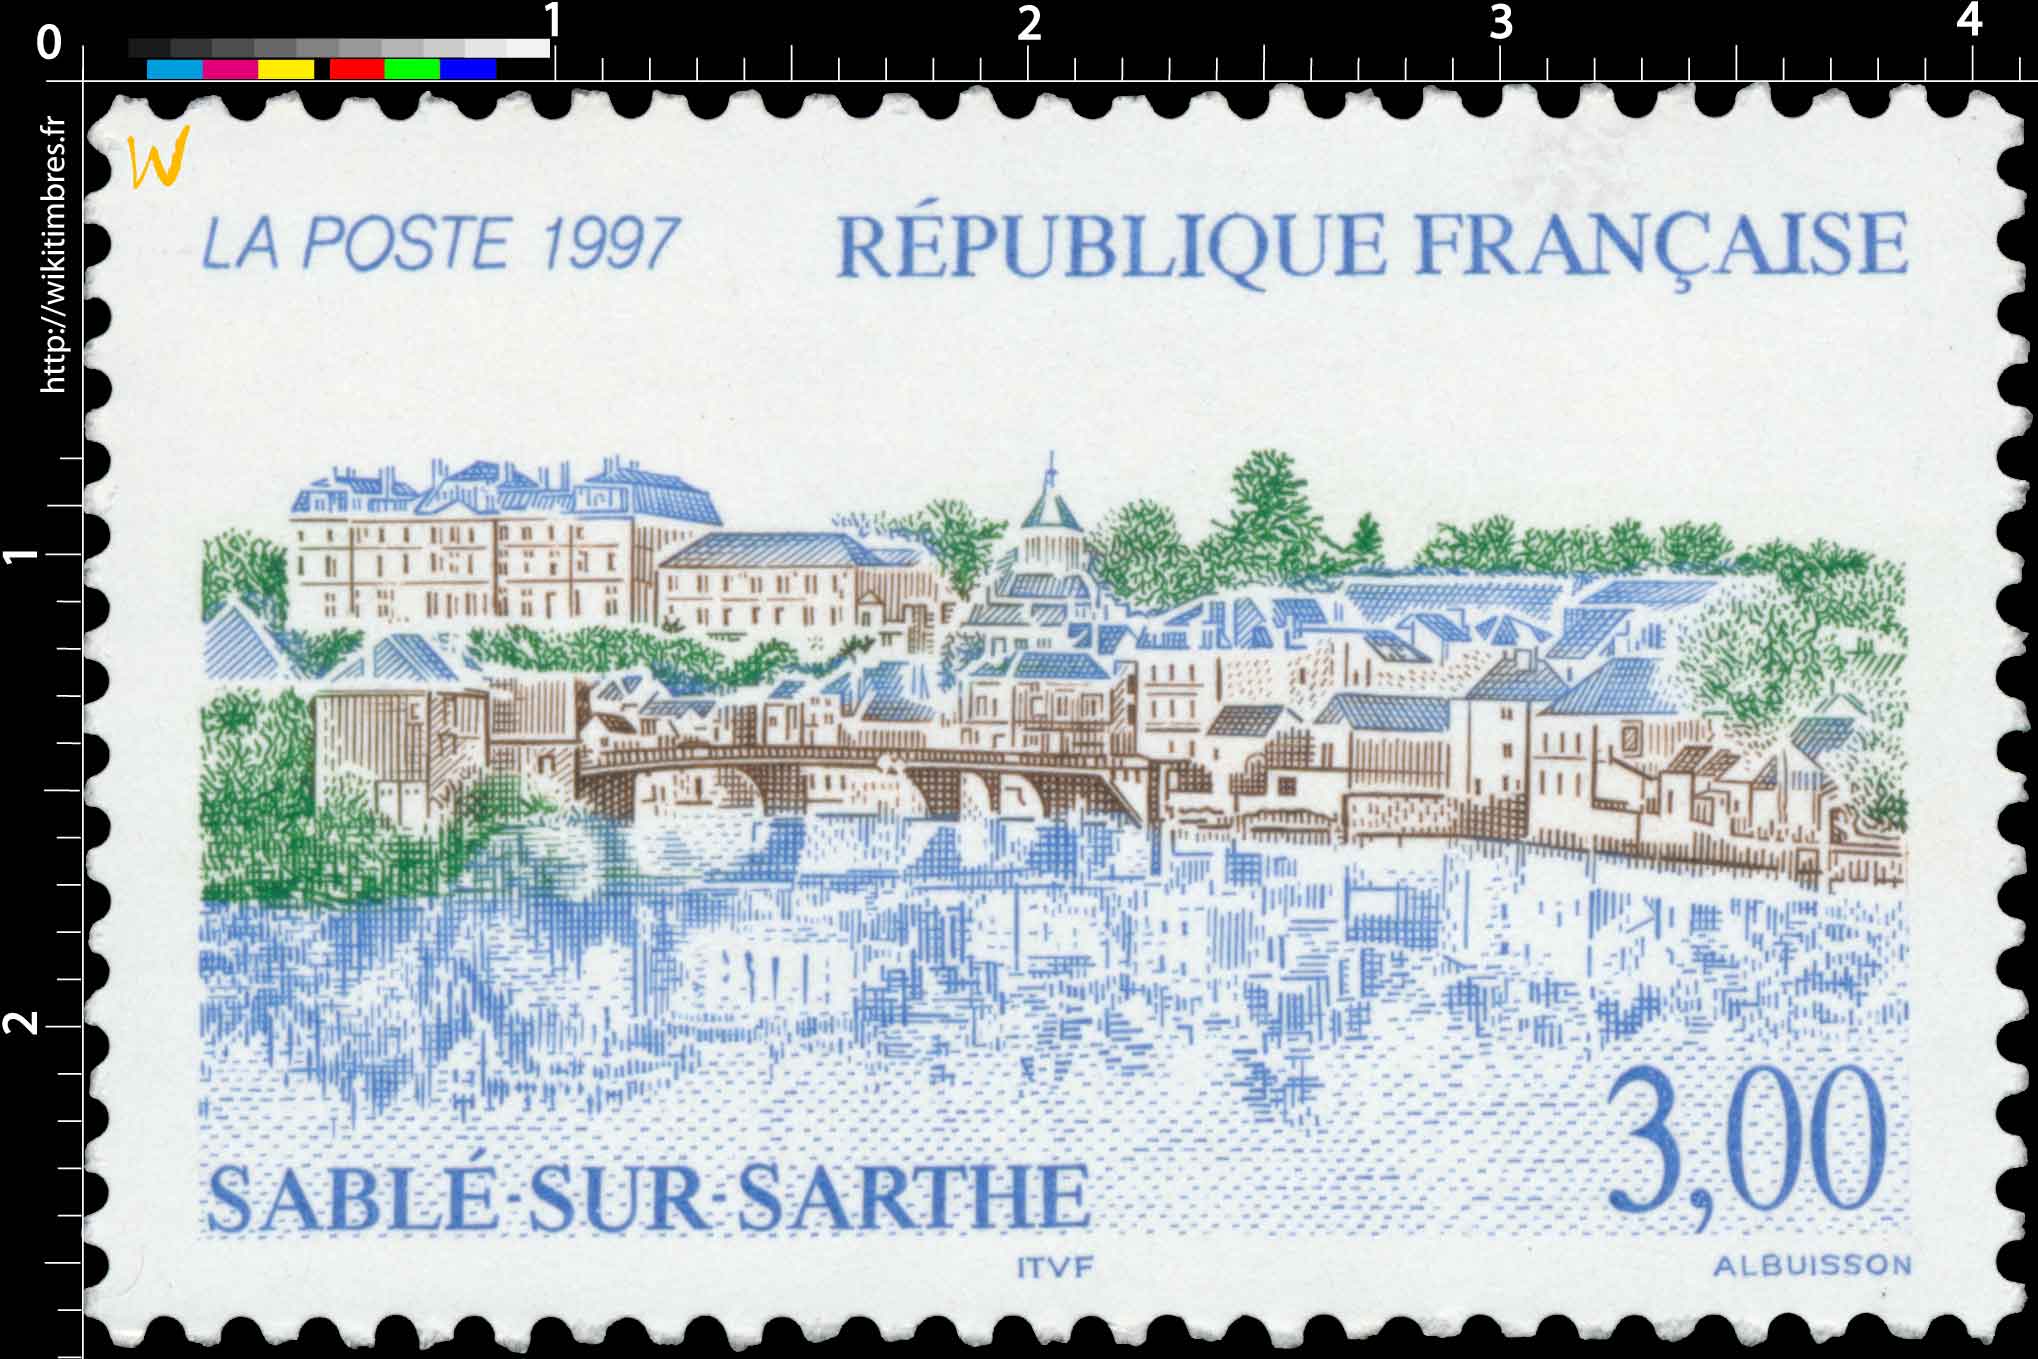 1997 SABLÉ-SUR-SARTHE